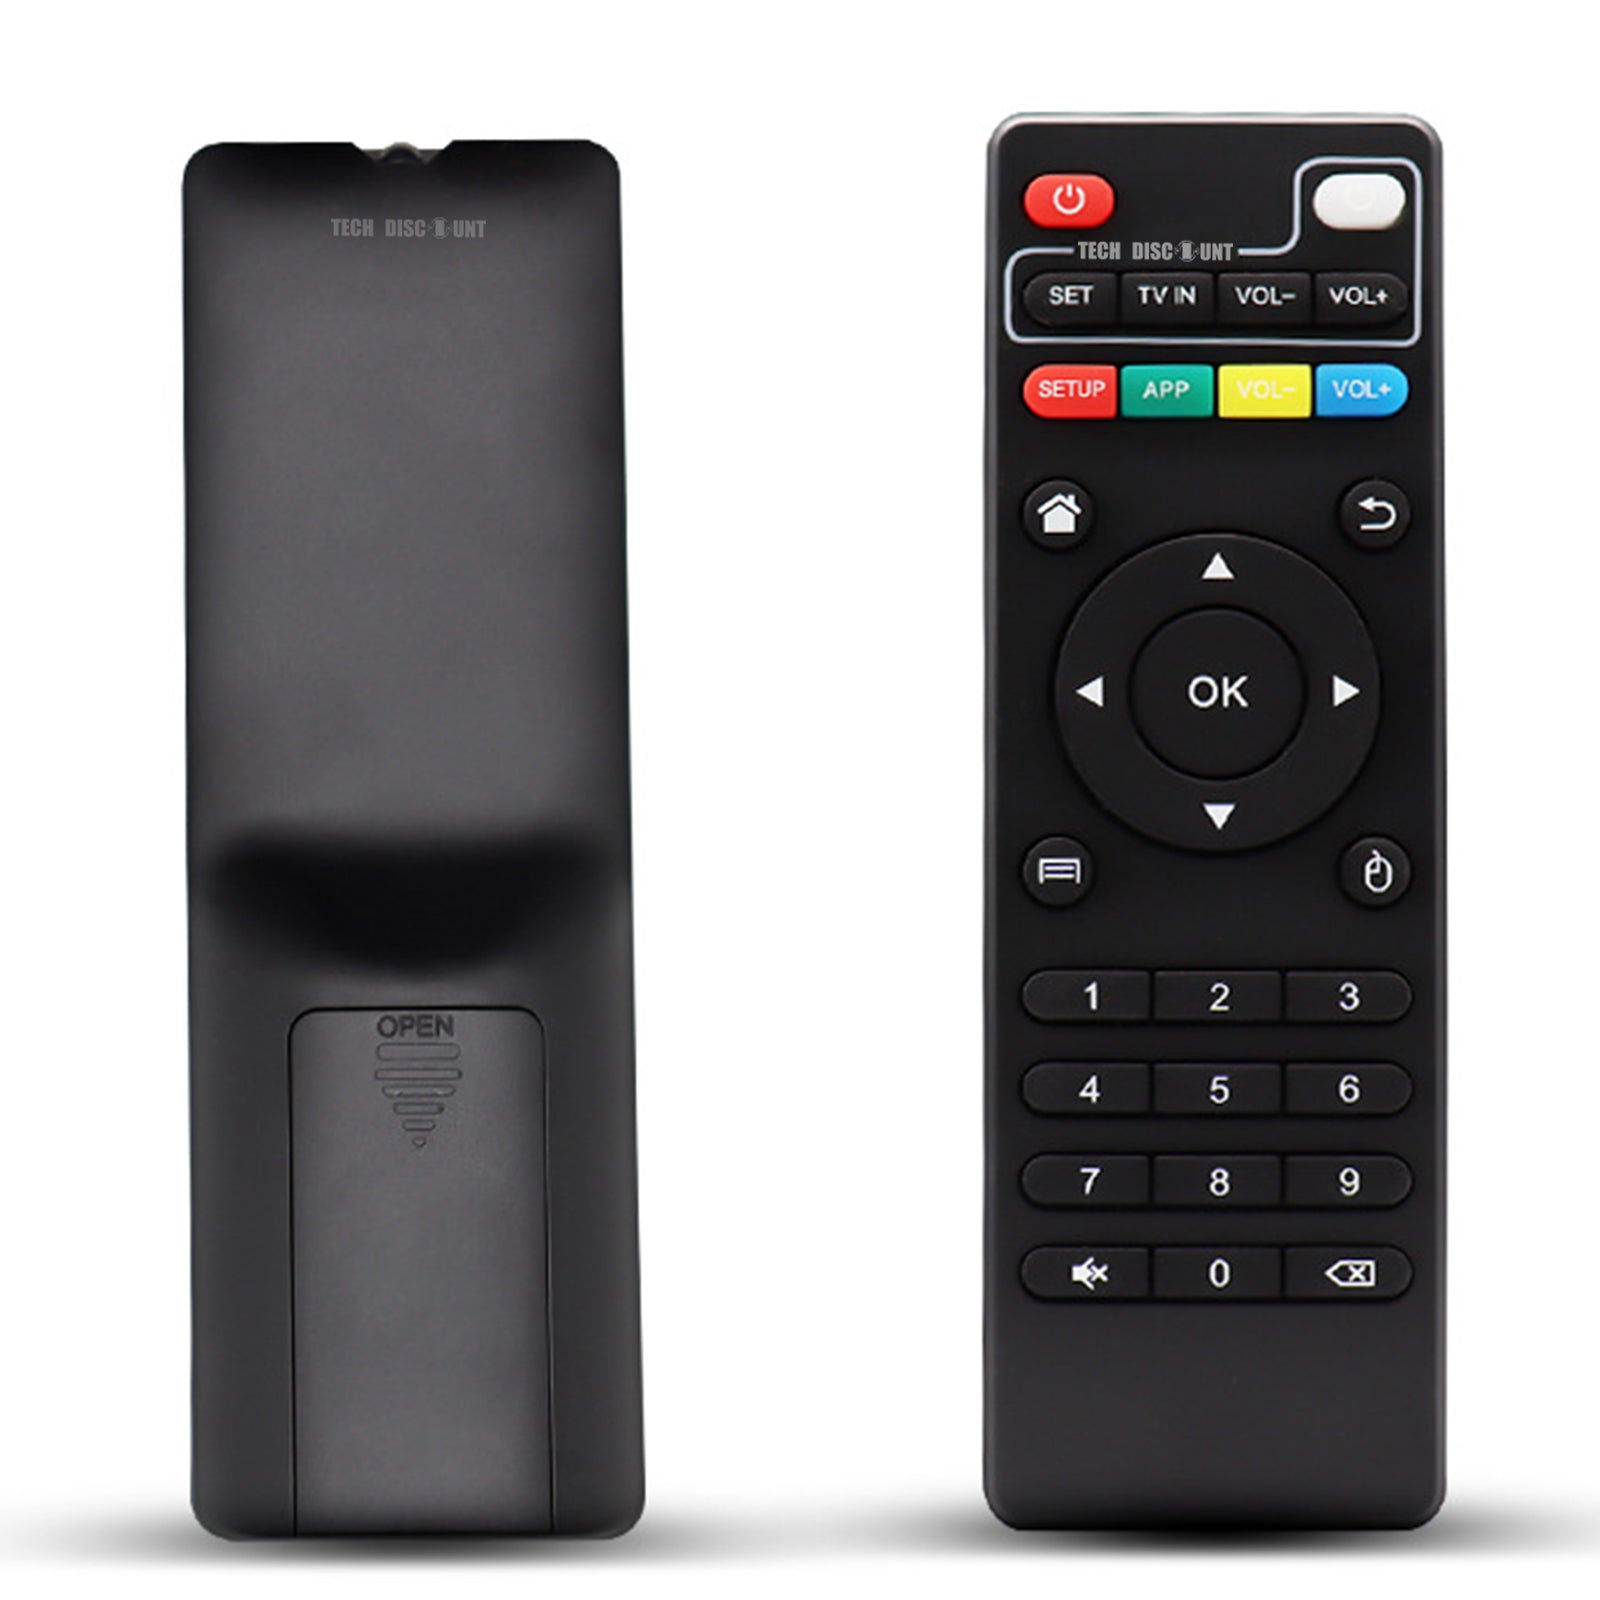 TD® Télécommande Android TV compatibilités universelles fonctions multiples contrôler box télévision changement chaîne multimédias